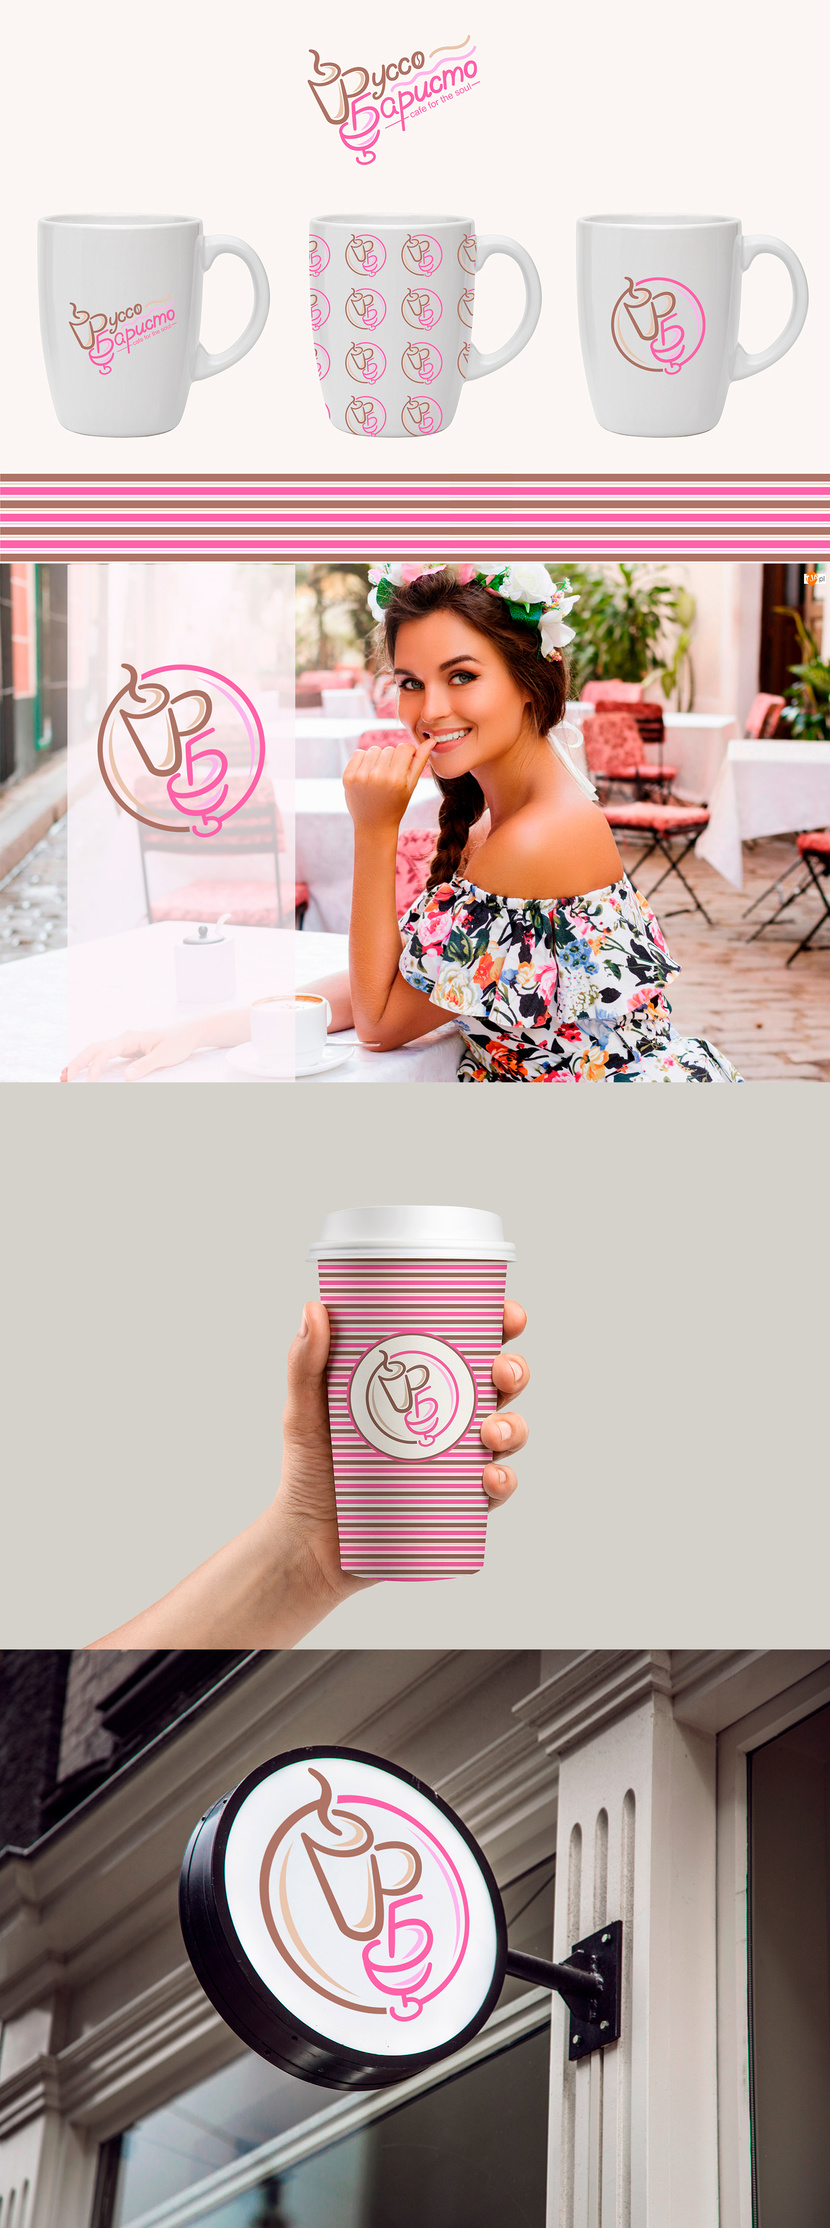 + - Создание логотипа для Кофейни - алкобара "Руссо баристо"